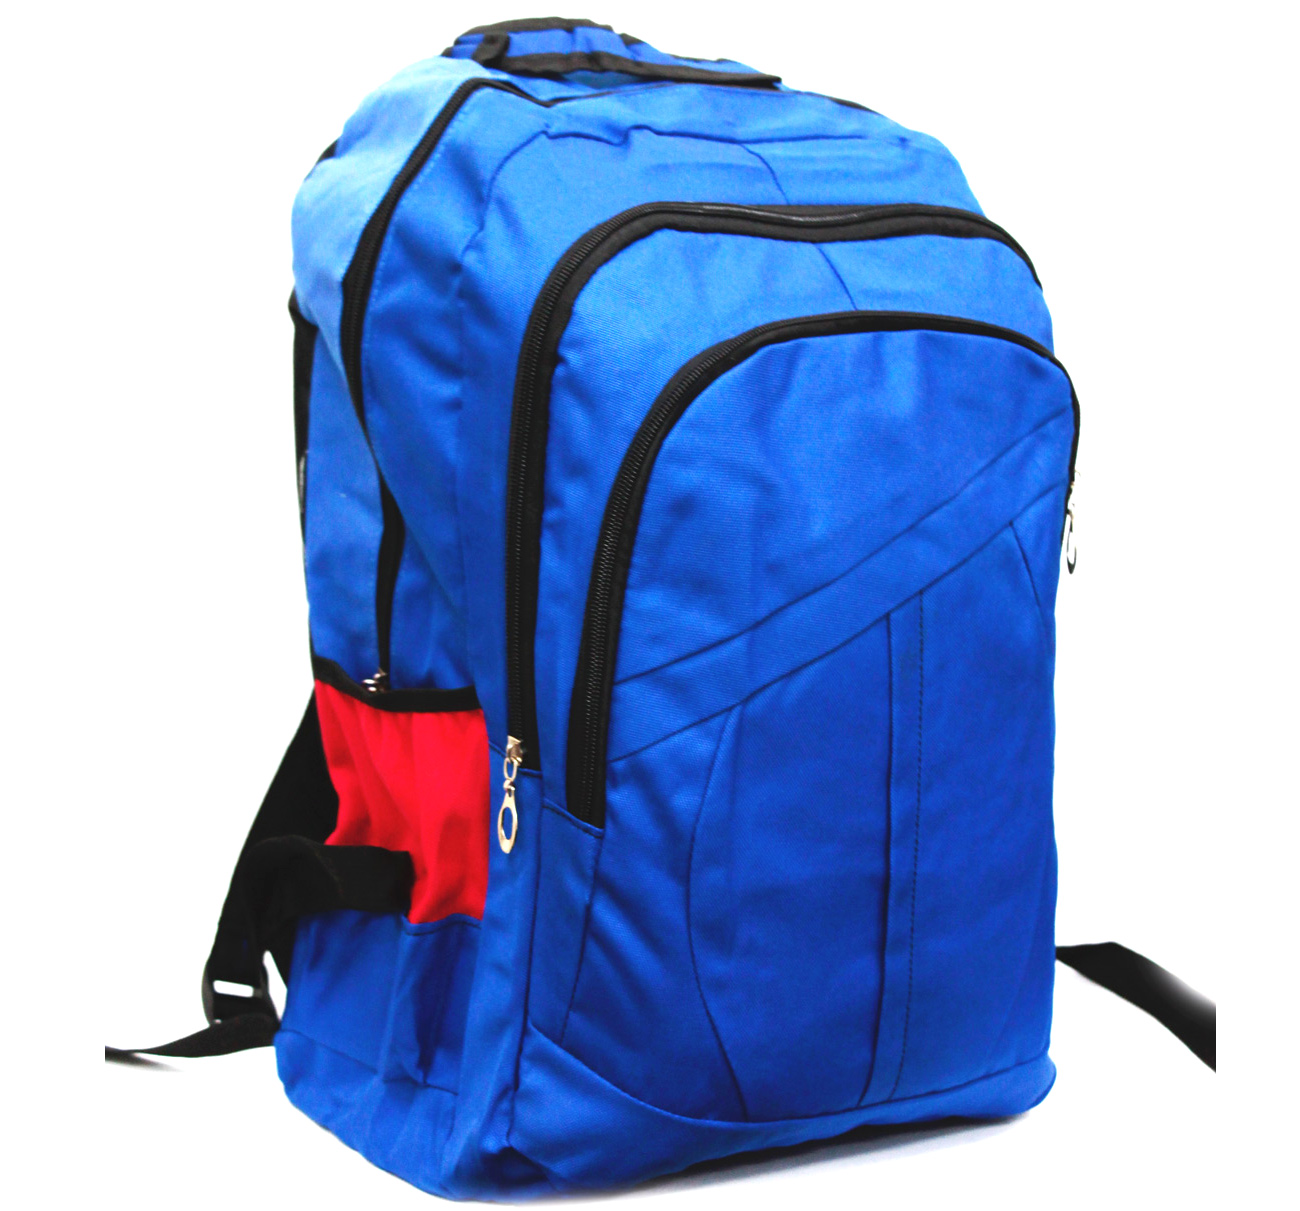 Рюкзак синий с красными вставками